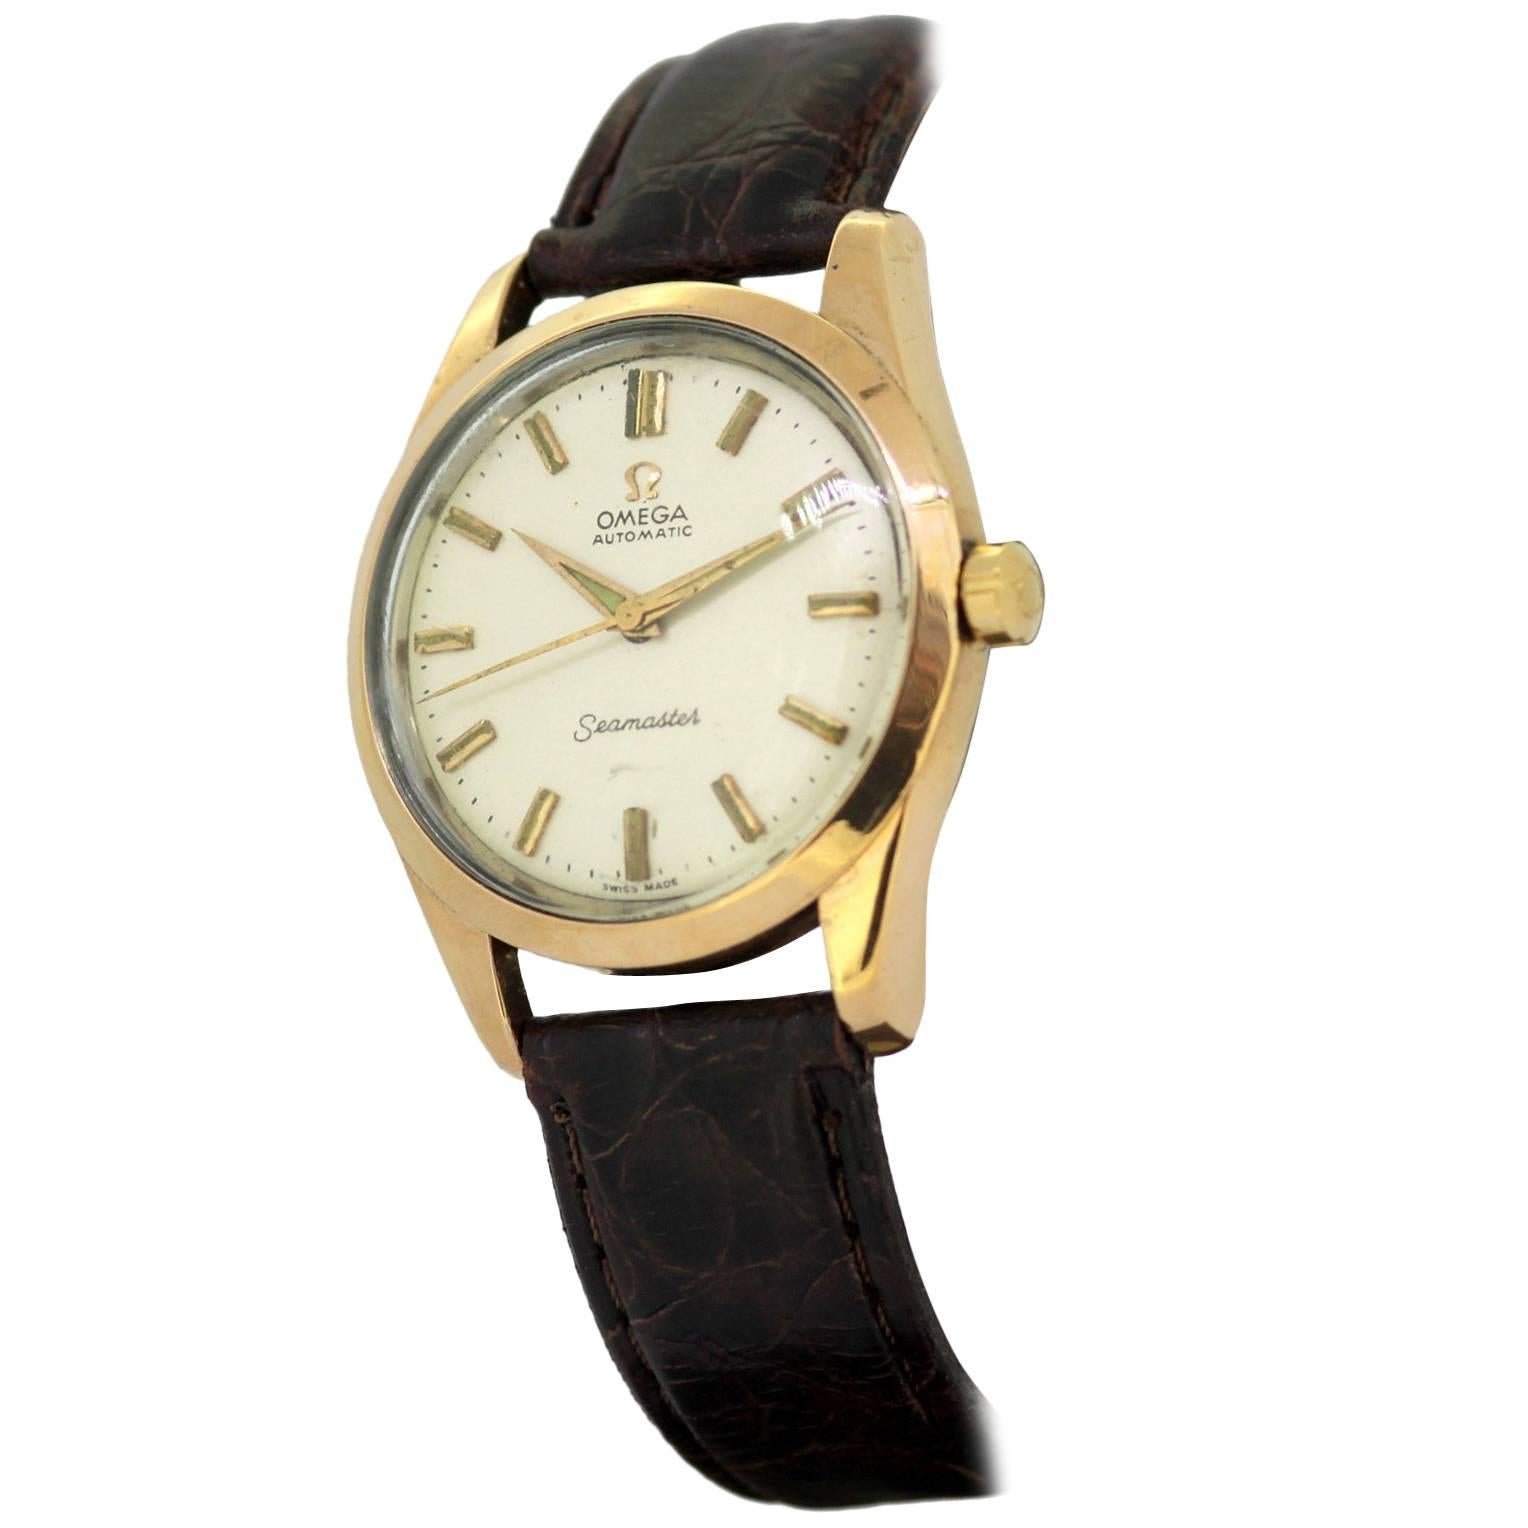 Omega Seamaster, Automatic Wristwatch, 1960s